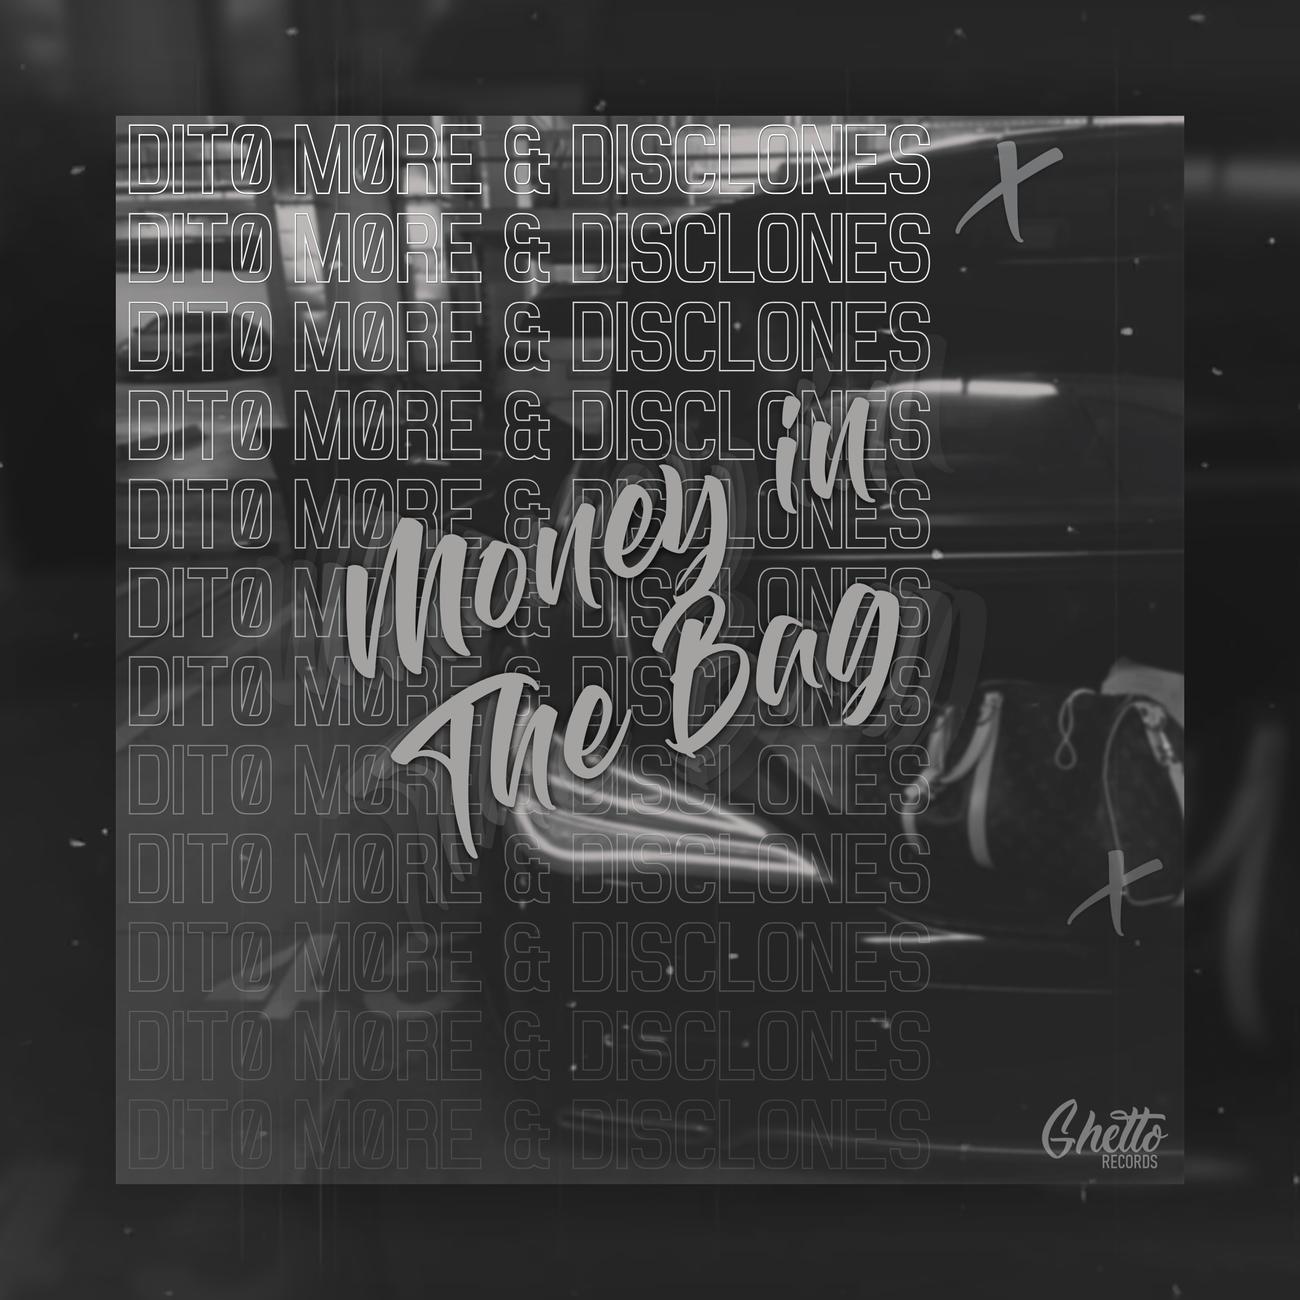 Постер альбома Money In The Bag